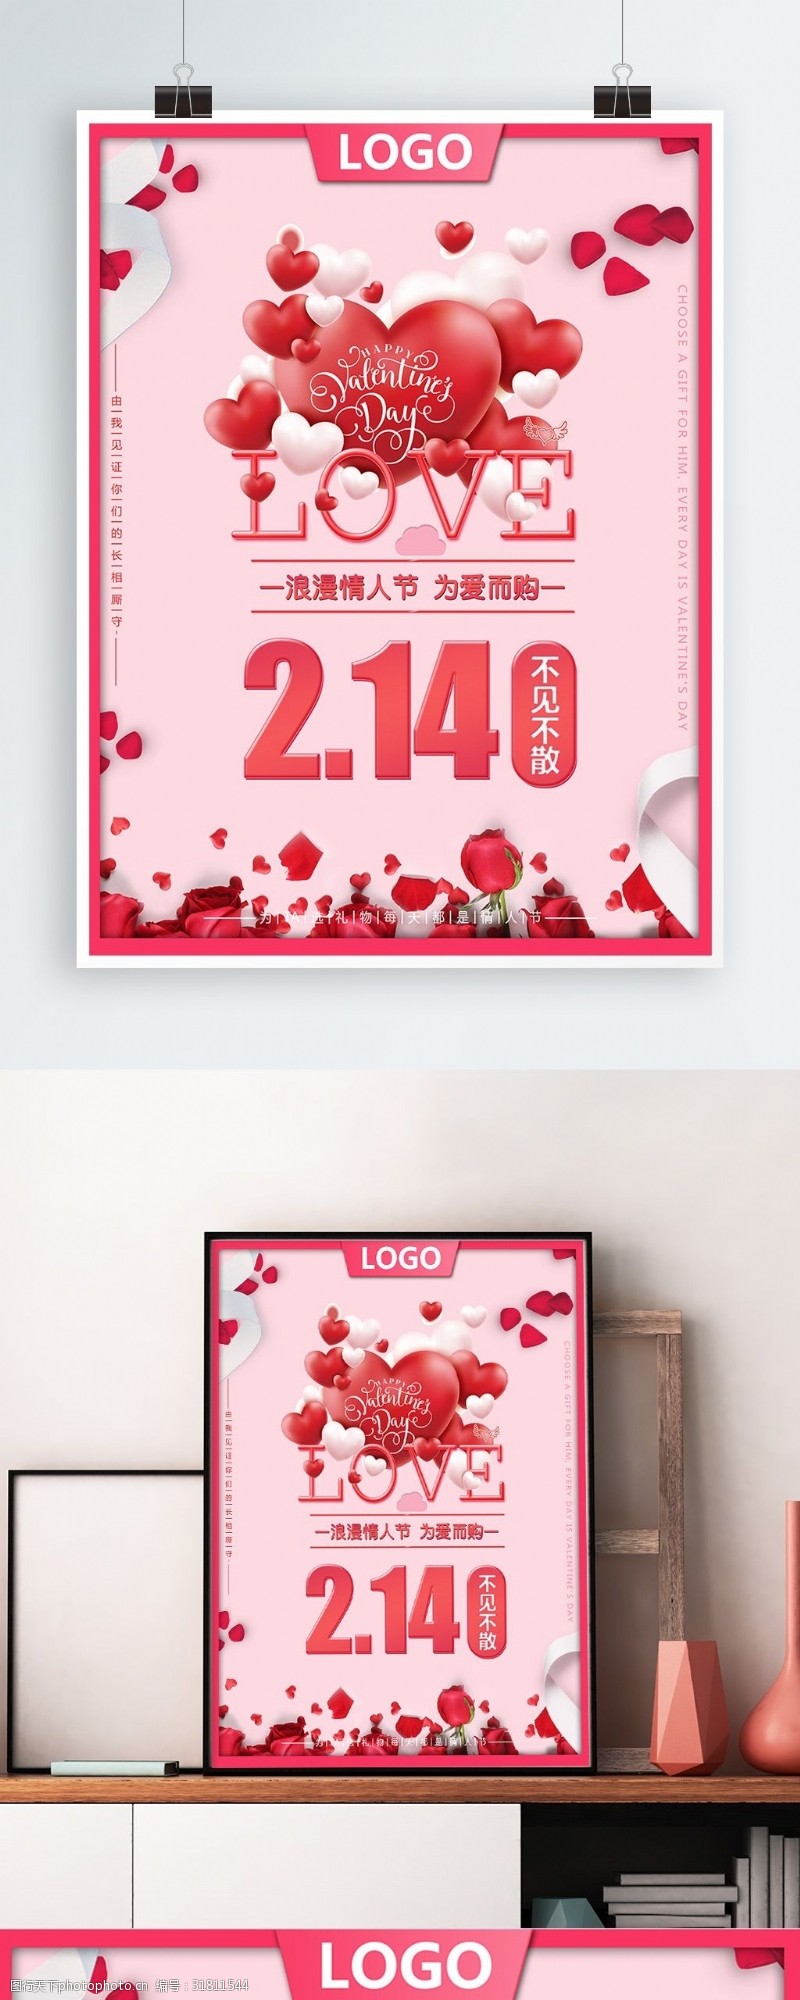 粉红色浪漫情人节活动促销海报